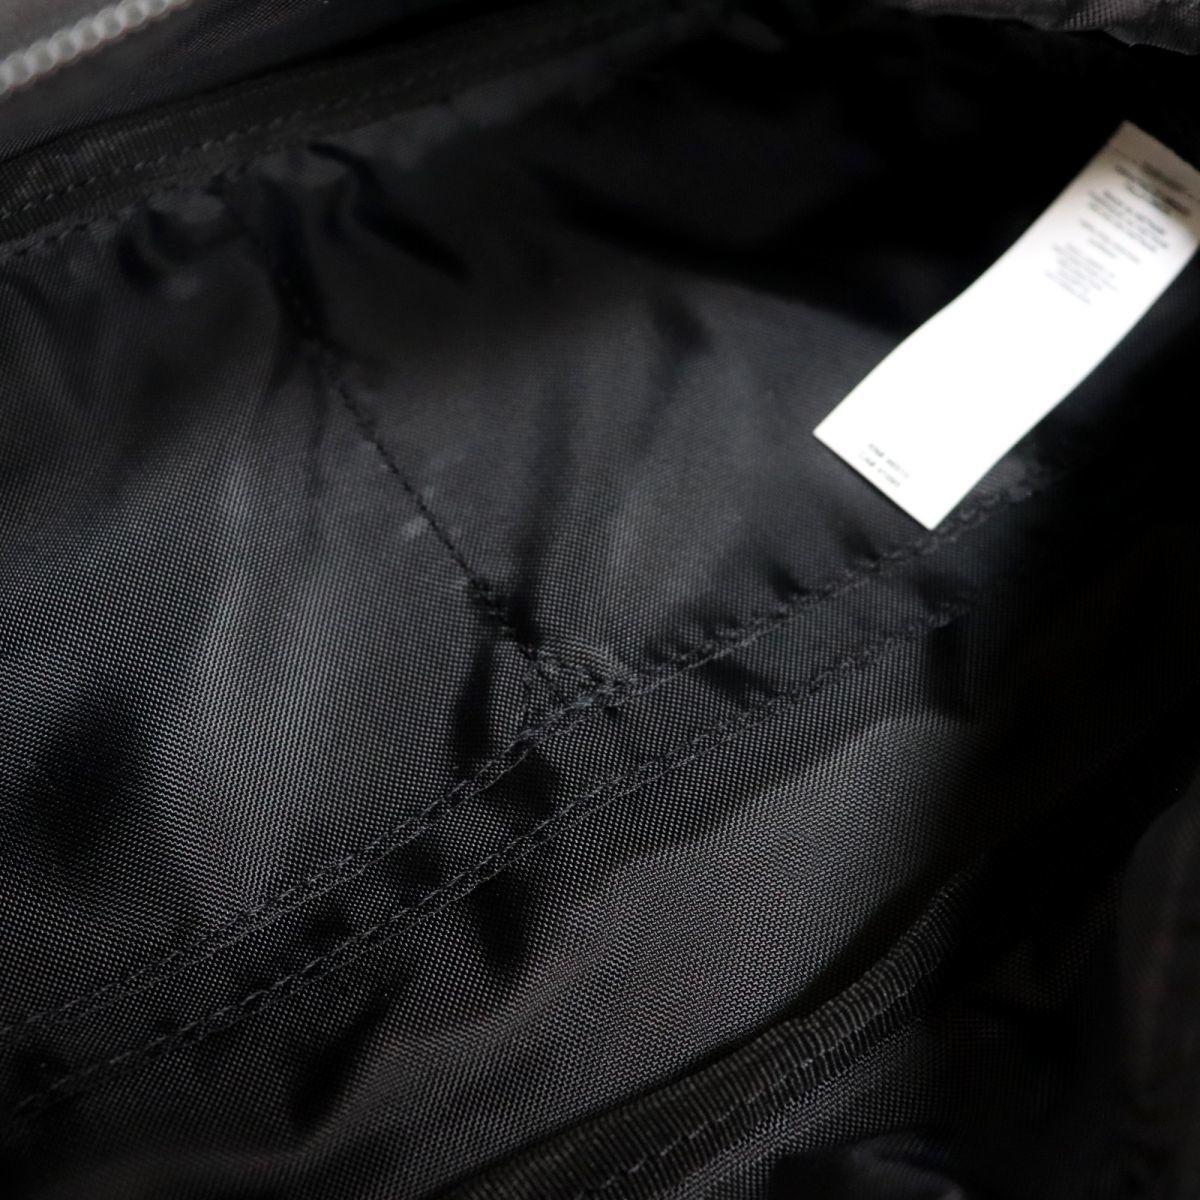 ★... UNDER ARMOUR  новый товар   мужской   лого   входит   простой   корпус   сумка   талия  сумка   сумка  BAG  сумка   черный [1364275-001] 6★QWER★